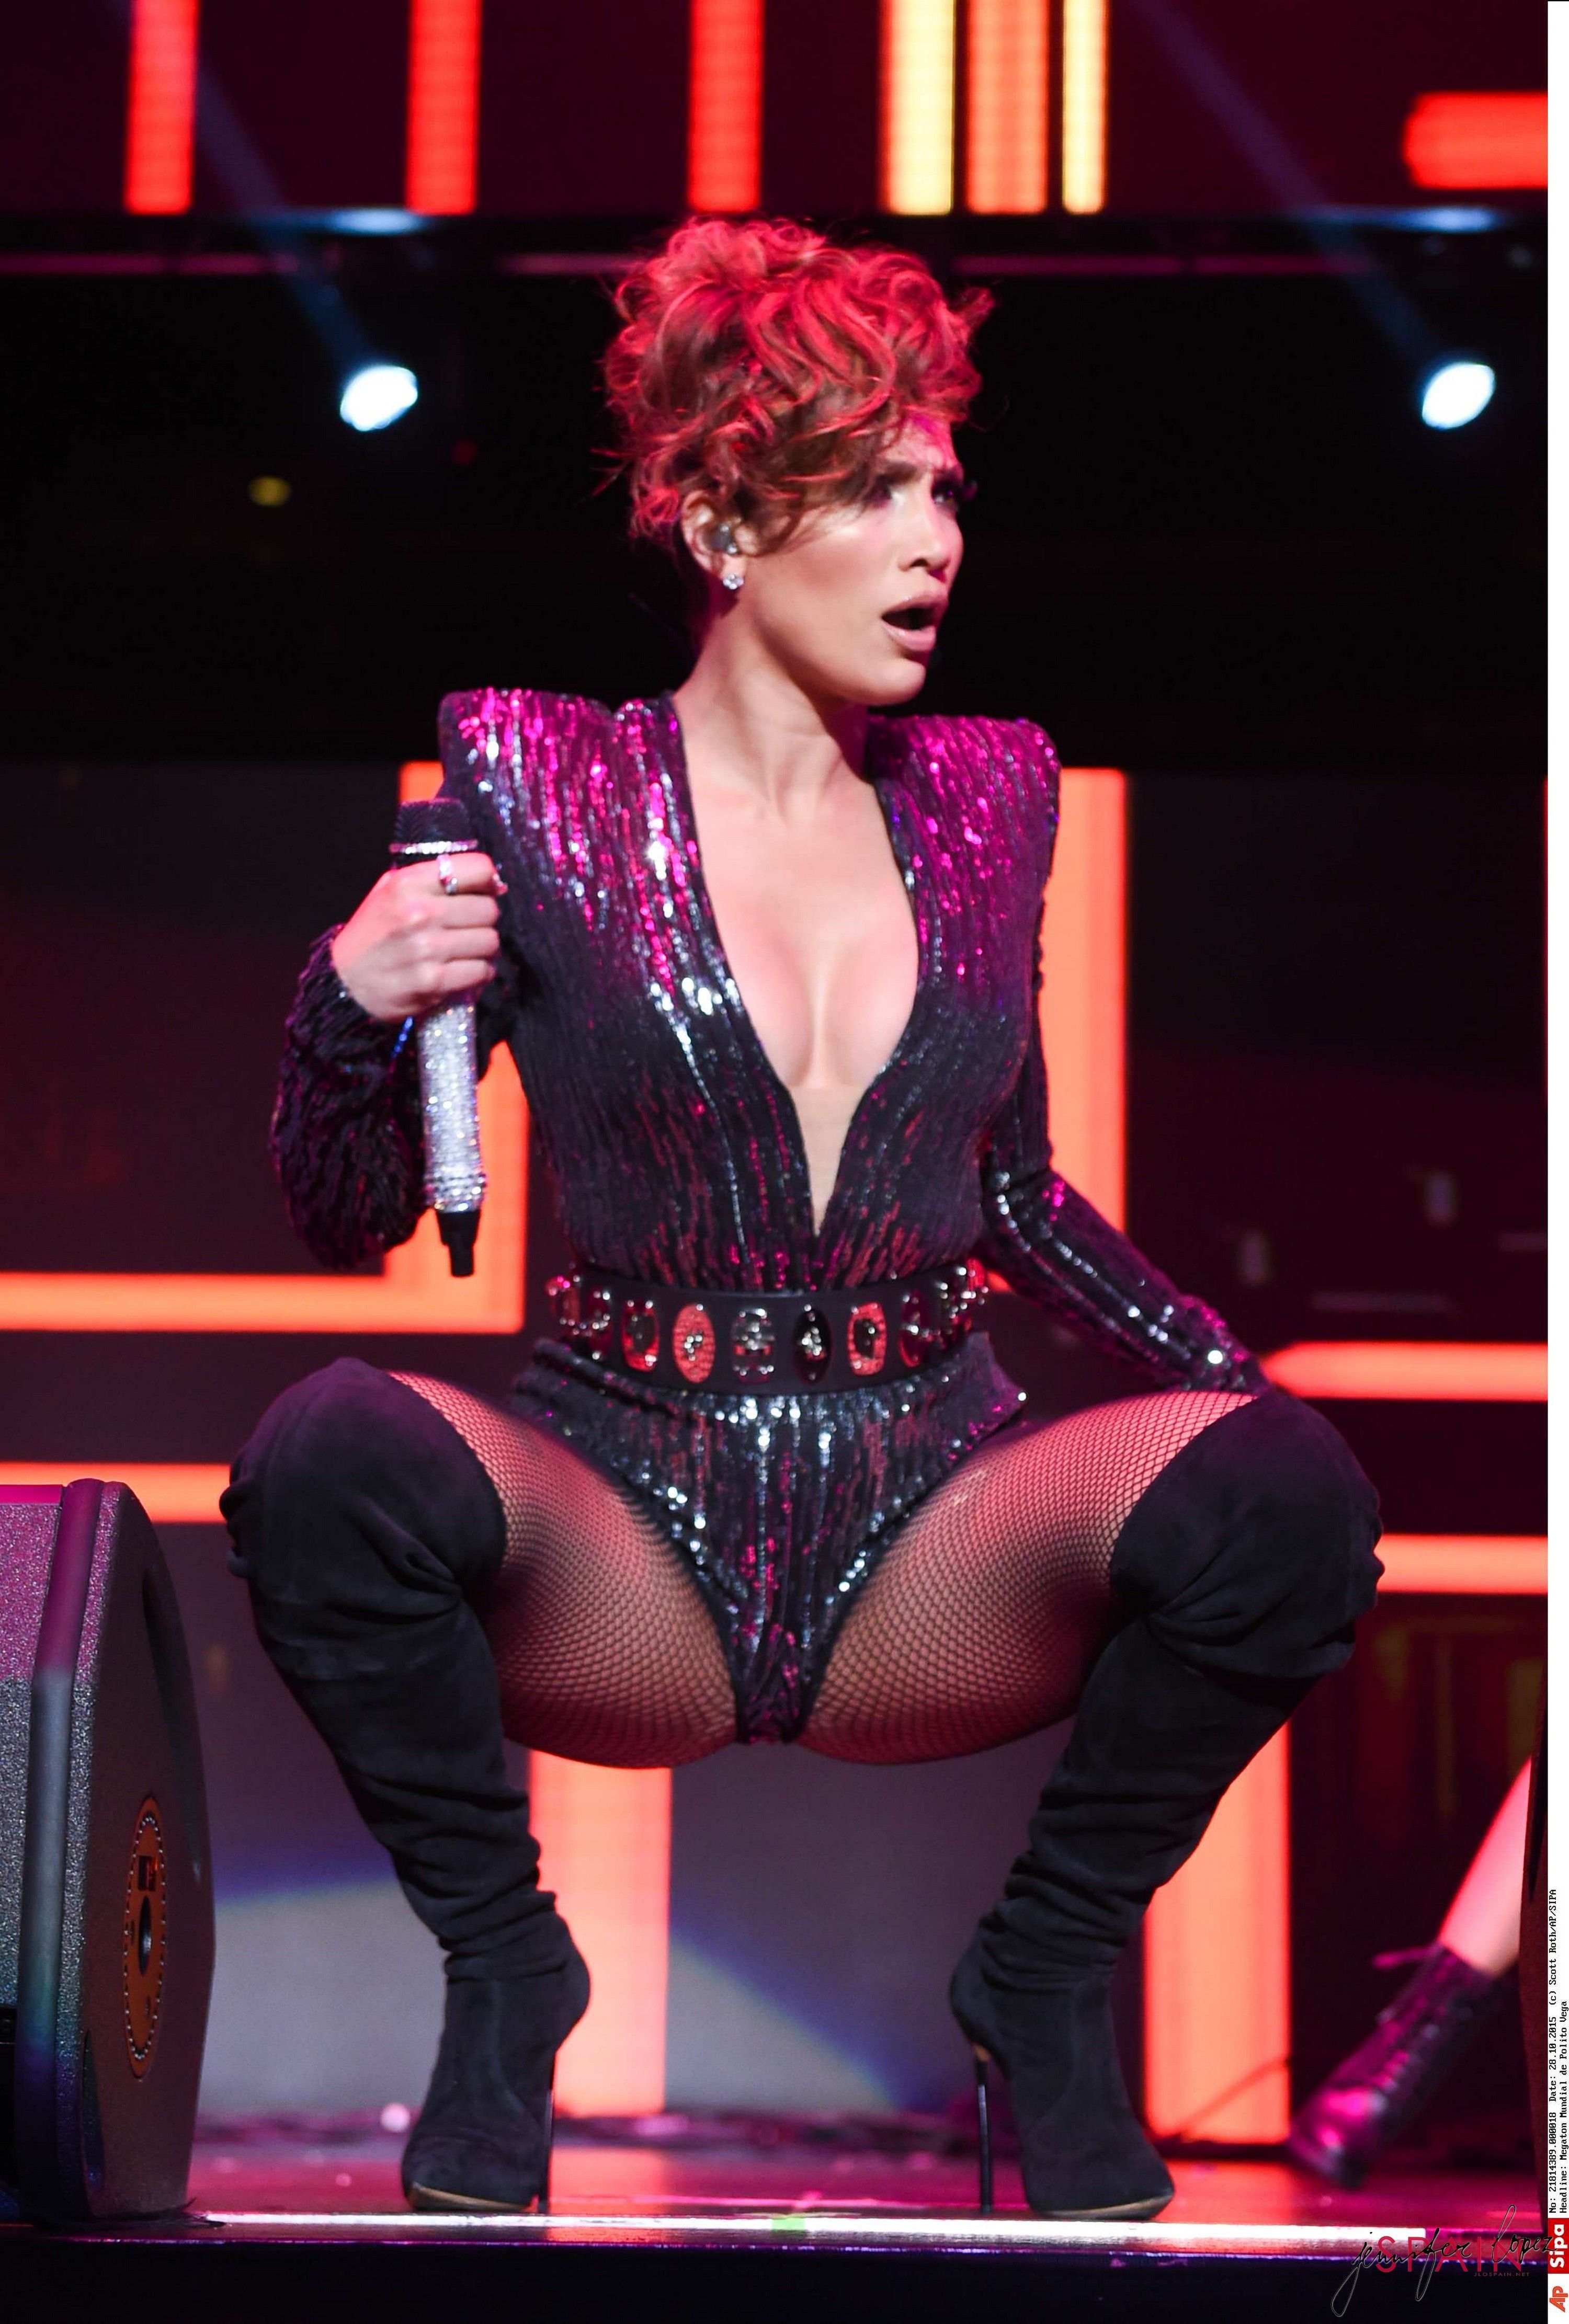 581 Photos - Jennifer Lopez JLO Spread Legs #JLO #JenniferLopez #SpreadLegs...